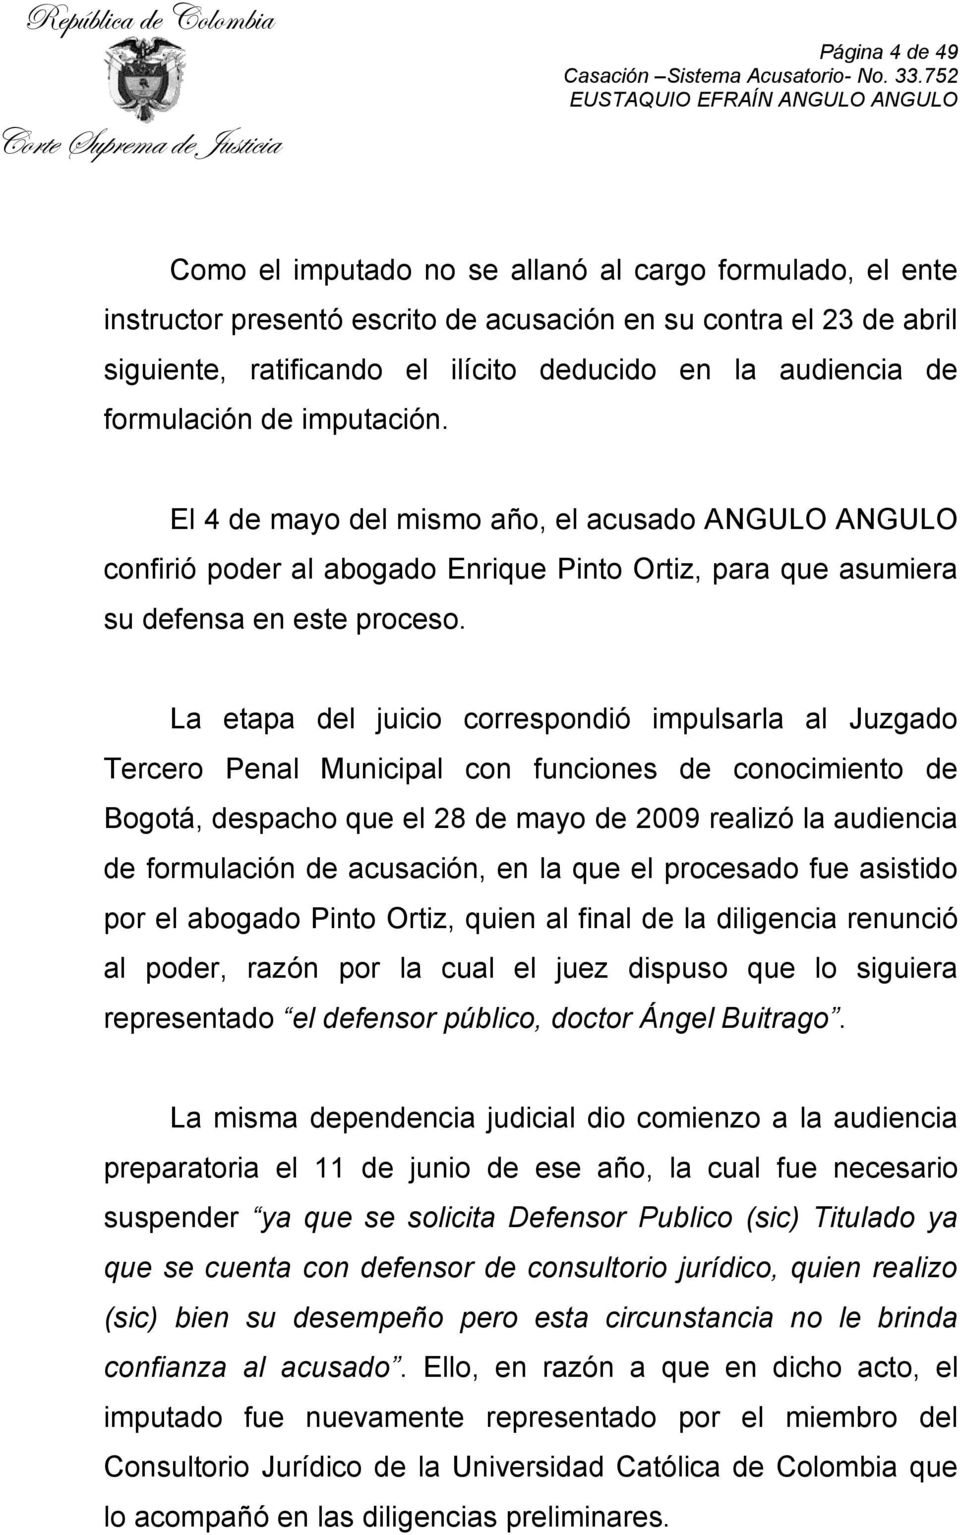 La etapa del juicio correspondió impulsarla al Juzgado Tercero Penal Municipal con funciones de conocimiento de Bogotá, despacho que el 28 de mayo de 2009 realizó la audiencia de formulación de